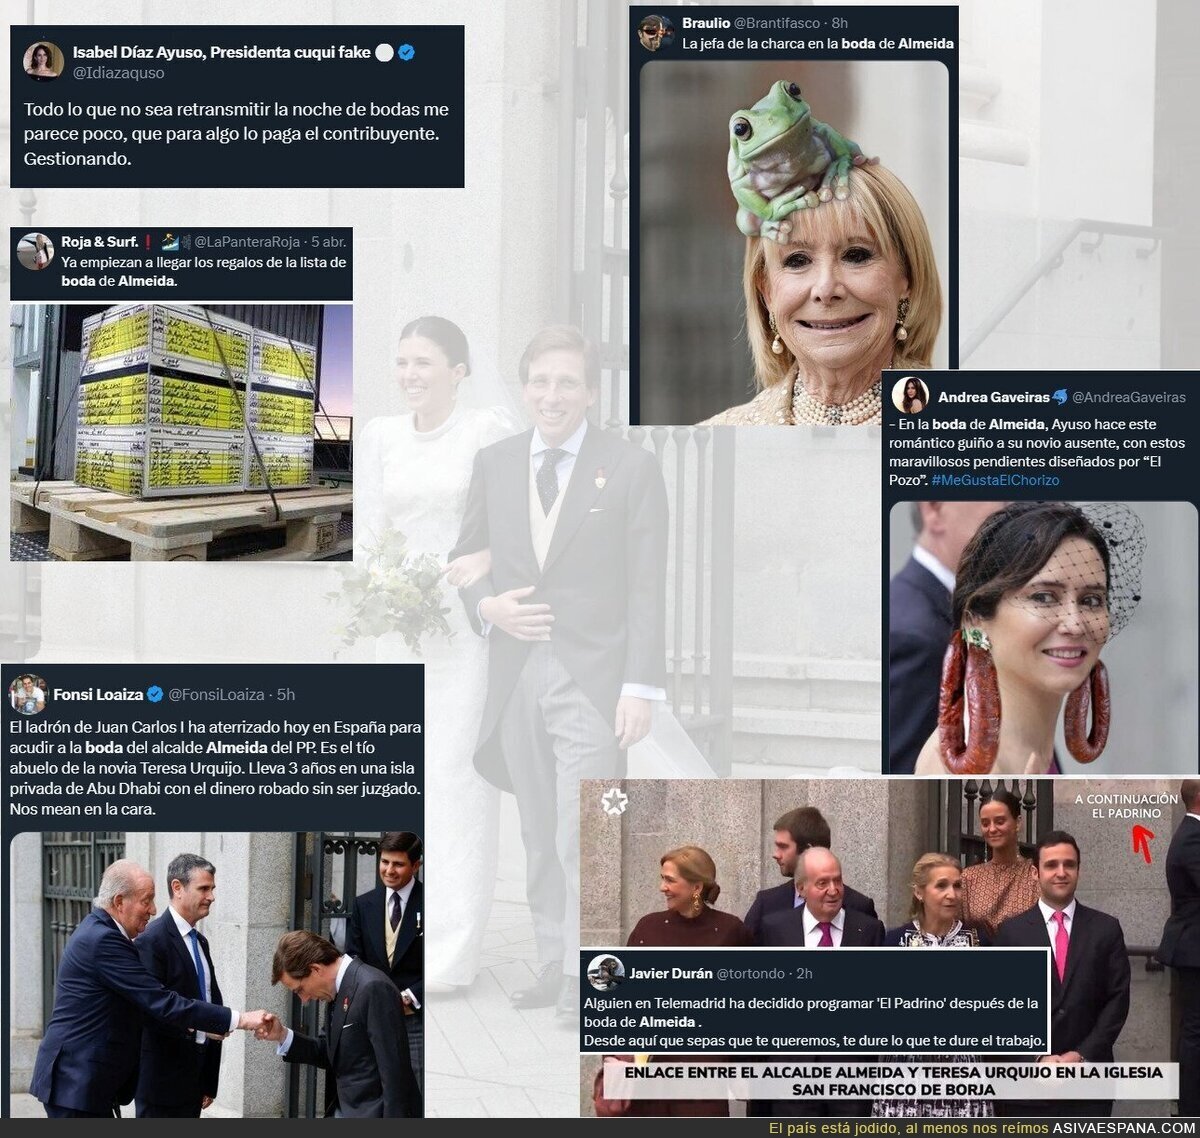 Crónica Twitter de la boda de Almeida (Vol. 1)